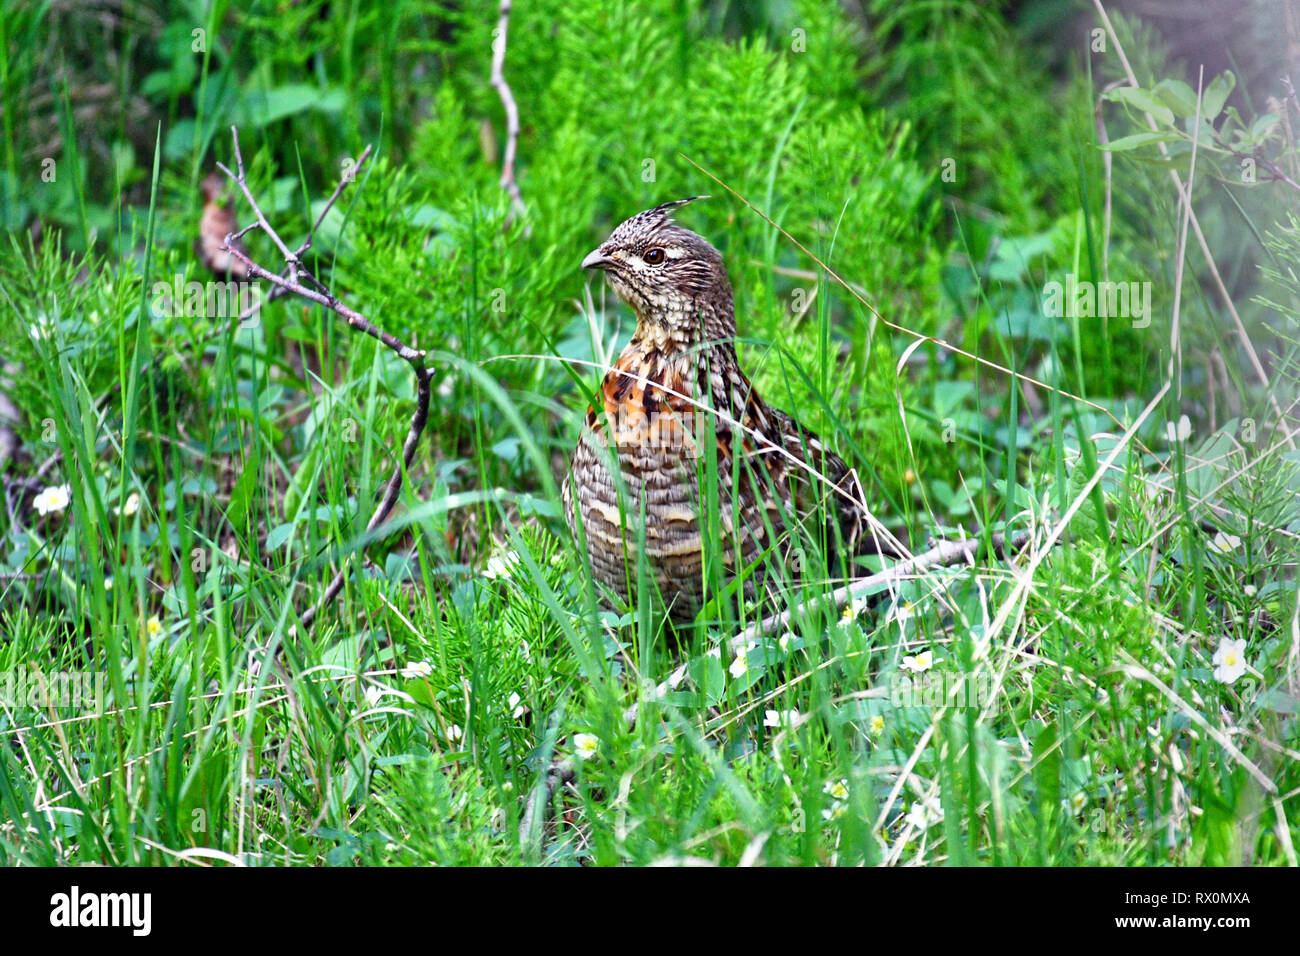 Foto: 40,708.08762 - - Huhn - Größe Hochland Spiel Bird, weiblichen Vari Grouse (Bonasa umbellus) im grünen Gras und fast versteckt Stockfoto